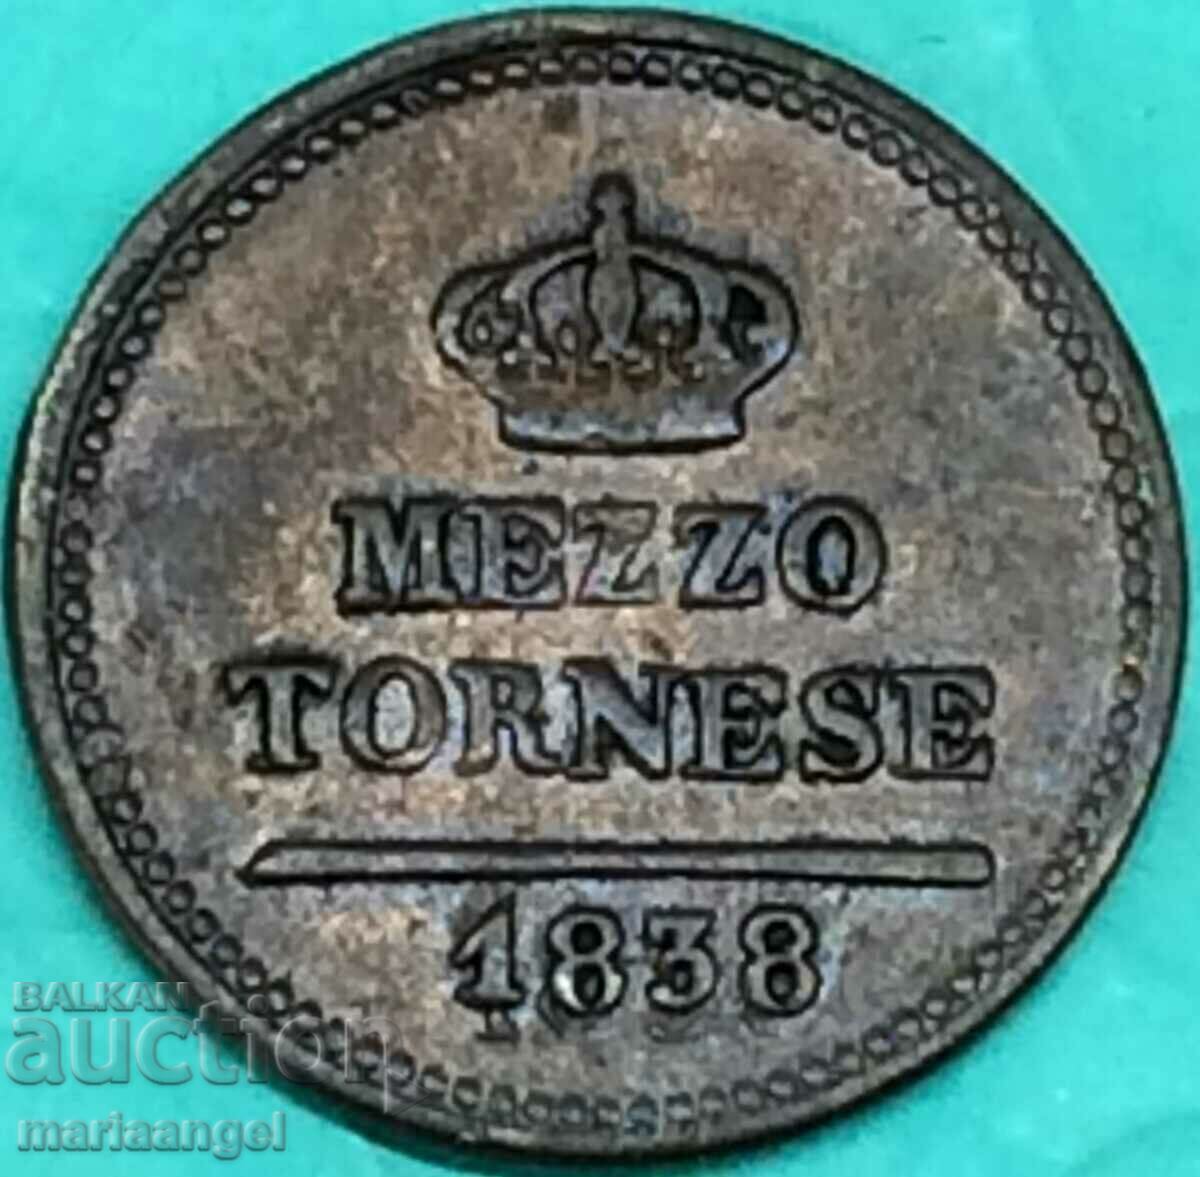 Naples mezzo tornesi 1838 Italy Ferdinand II copper